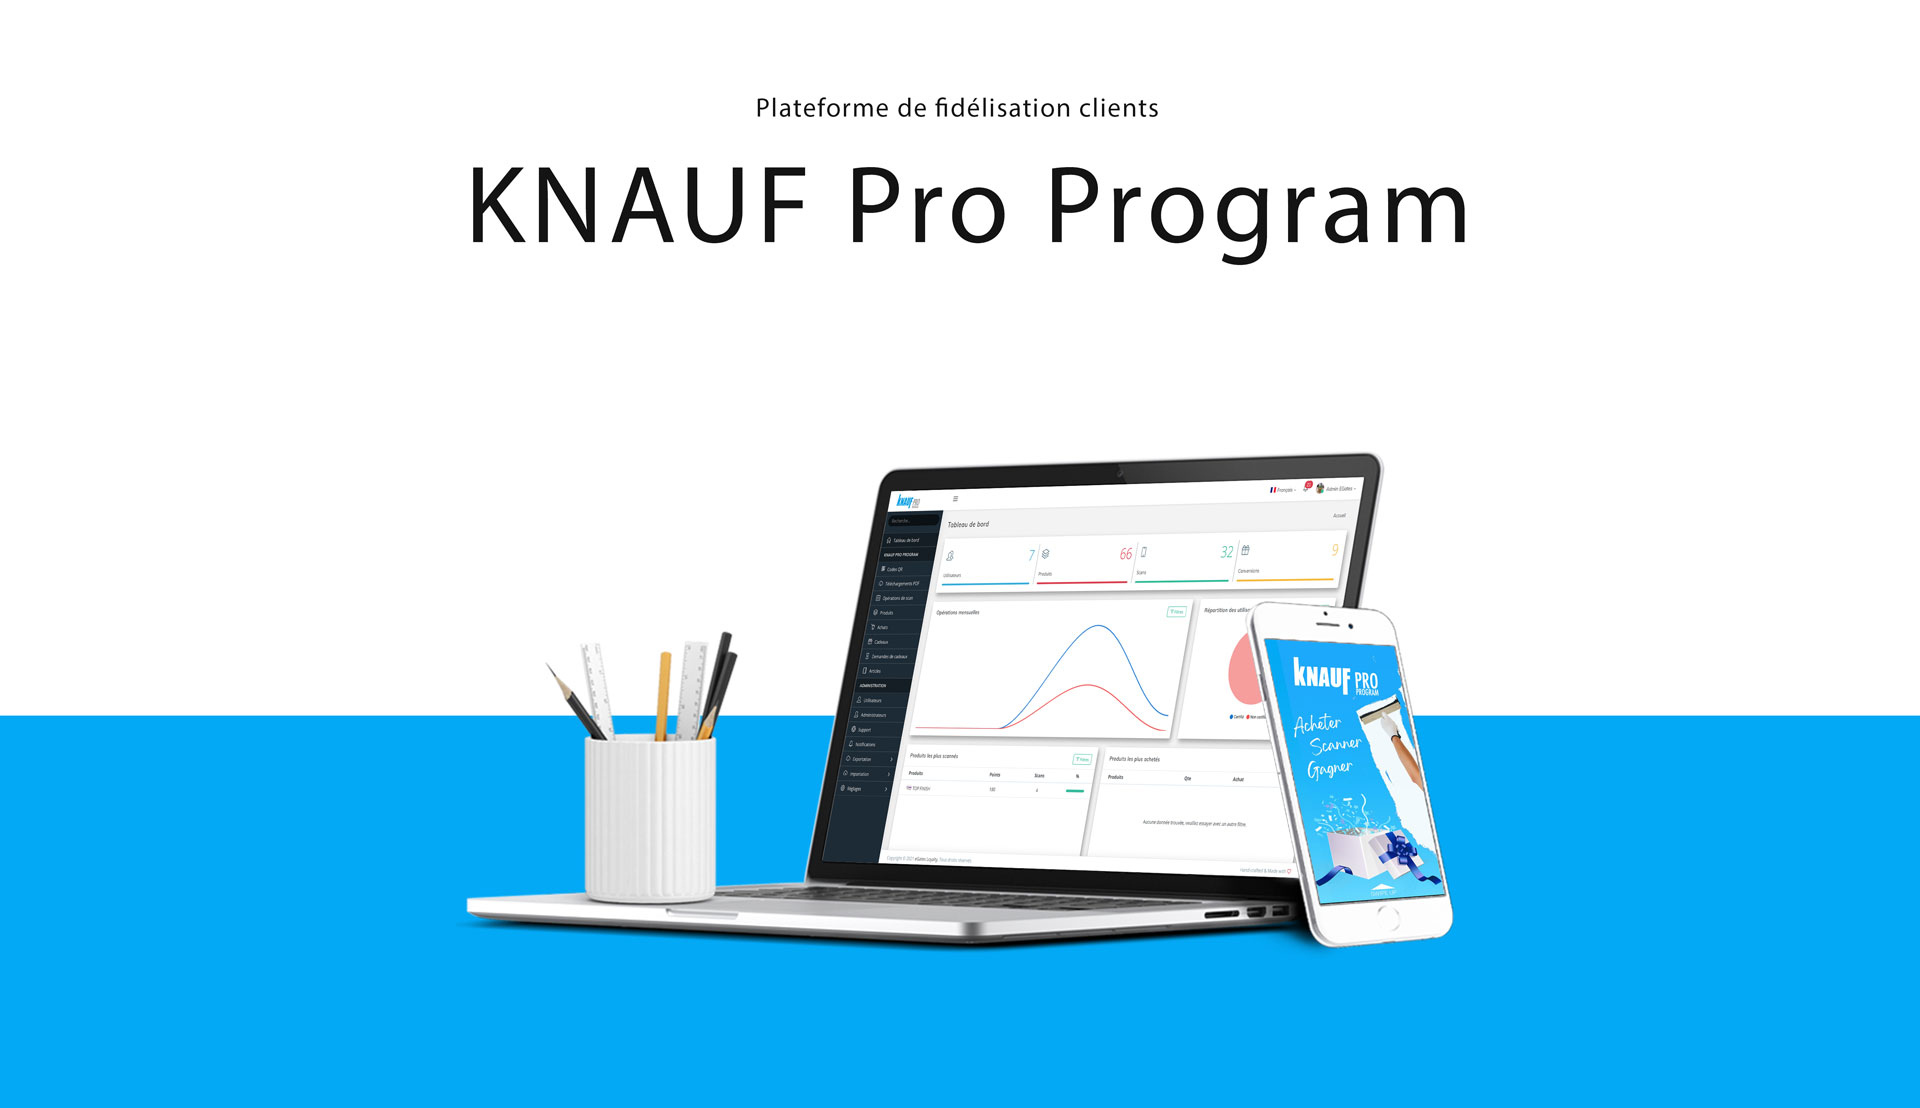 Knauf Pro Program